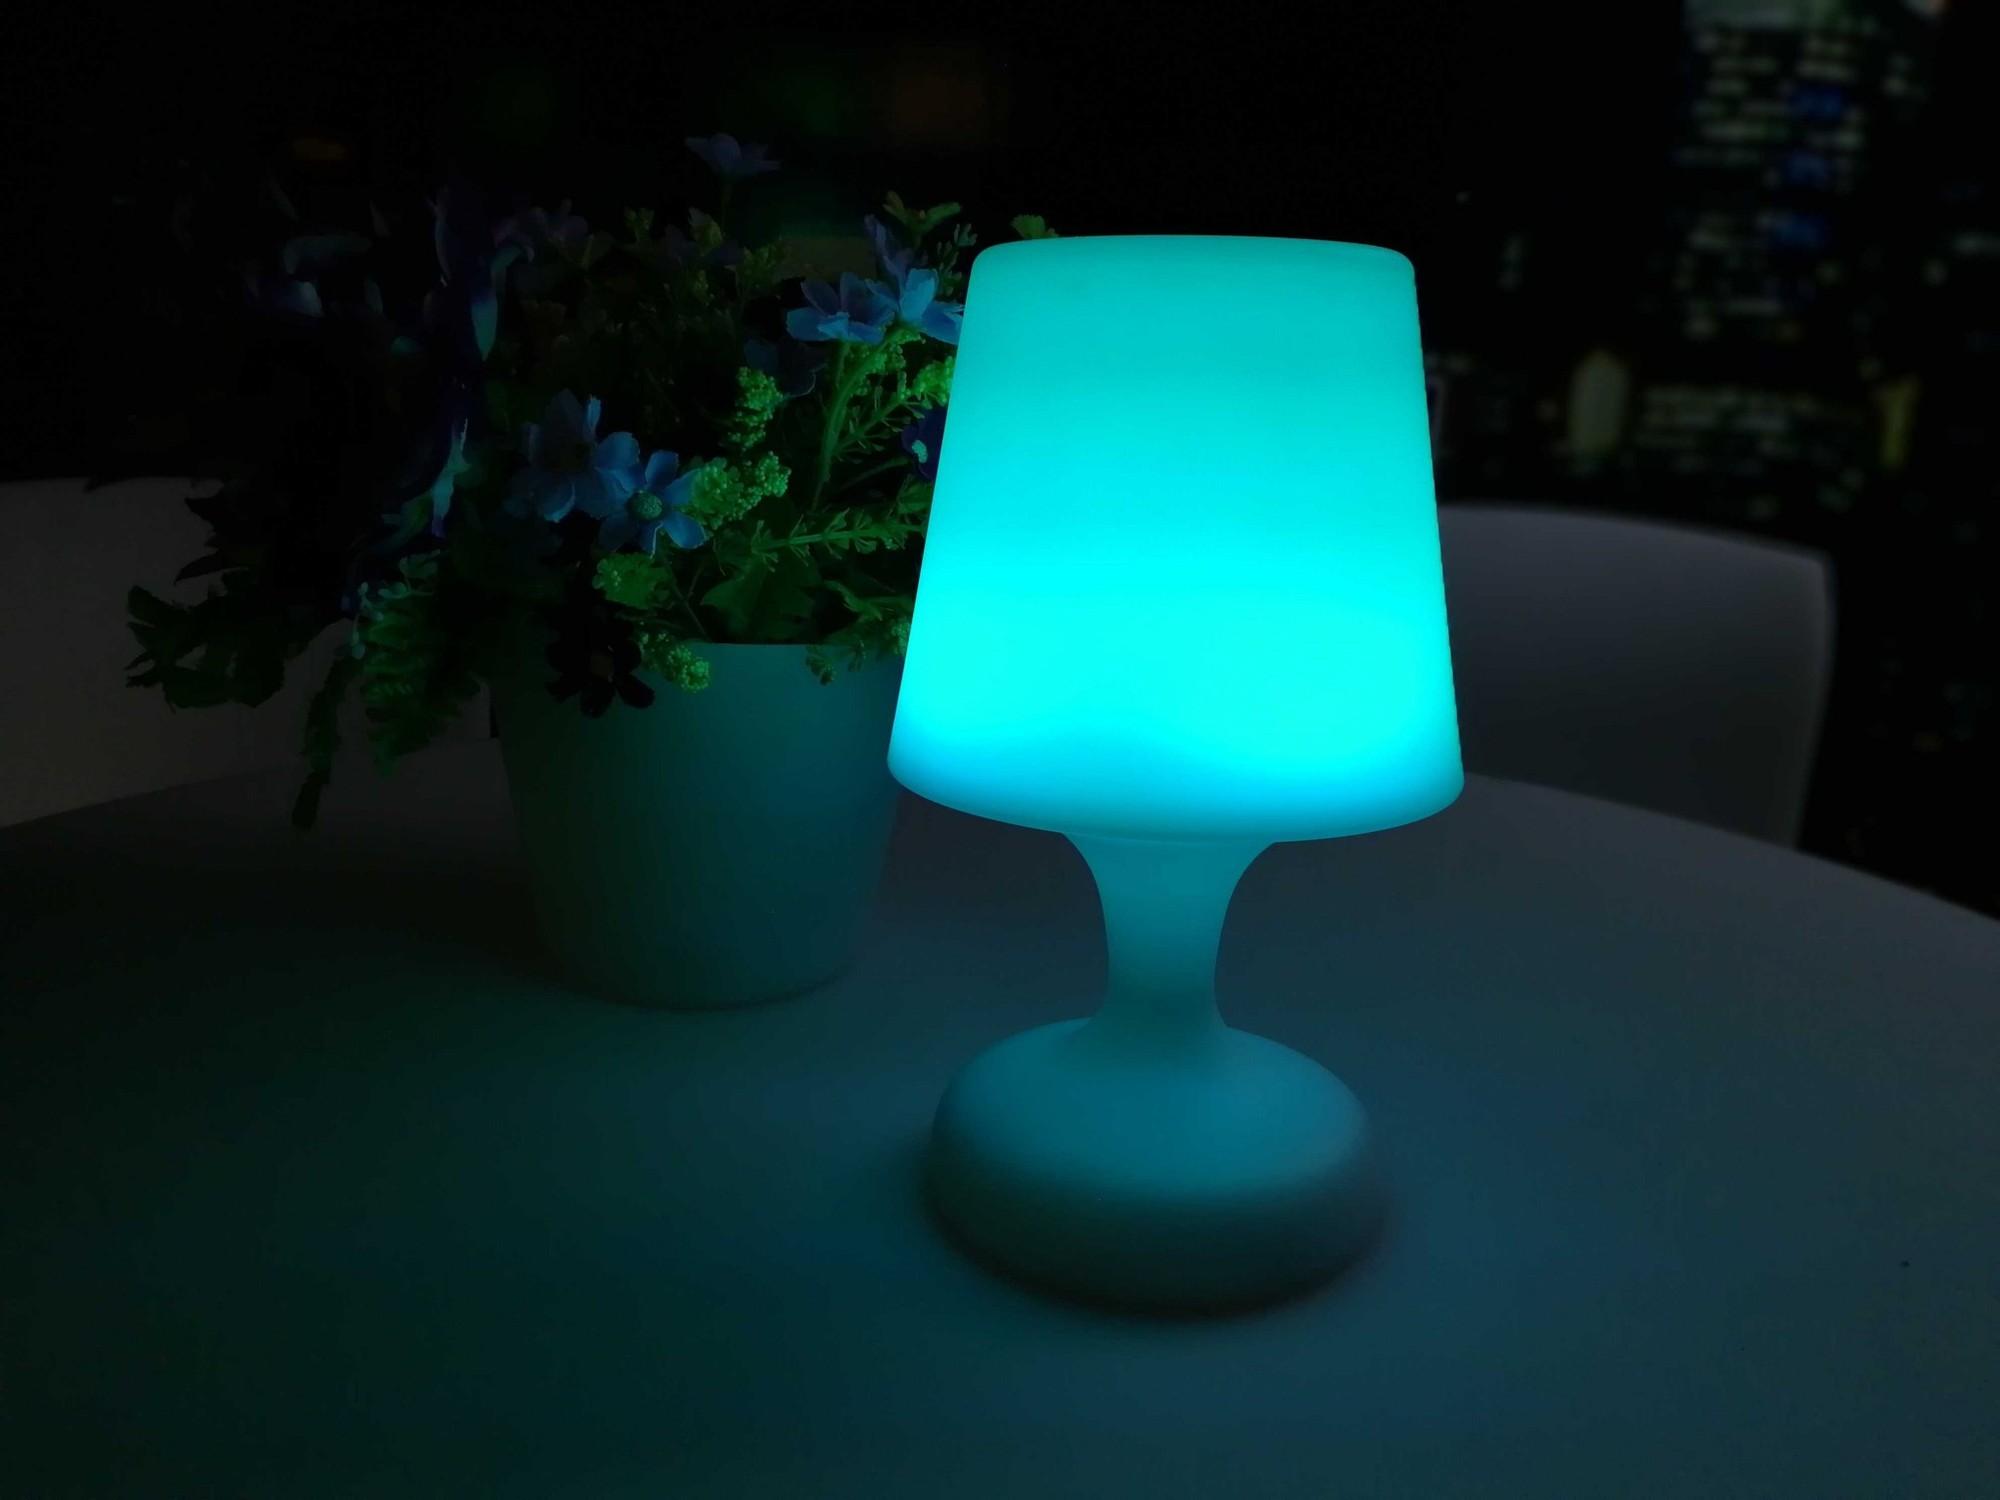 11" X 5" X 6" Multi PE Plastic LED Table Lamp with Bluetooth Speaker